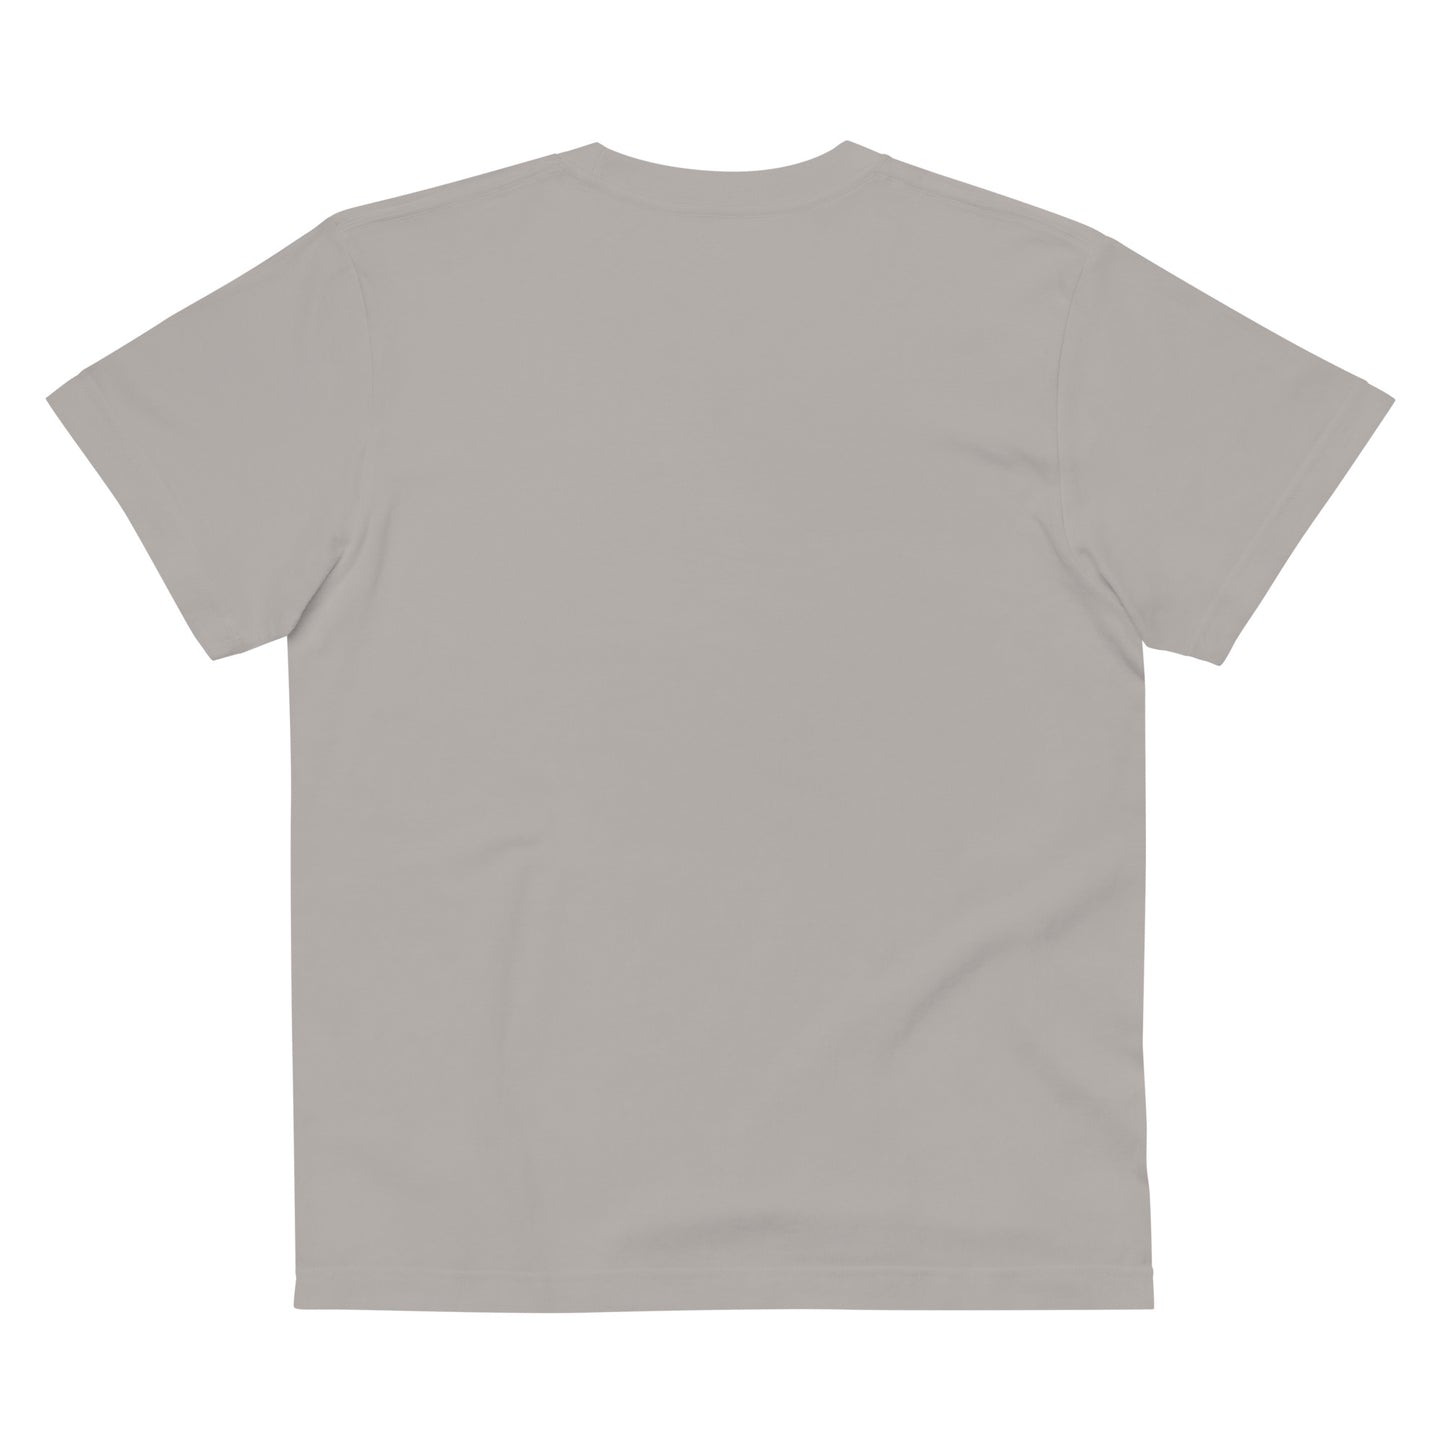 E007 - เสื้อยืดผ้าฝ้ายคุณภาพสูง (Offroad MC: สีเทา/เงิน)